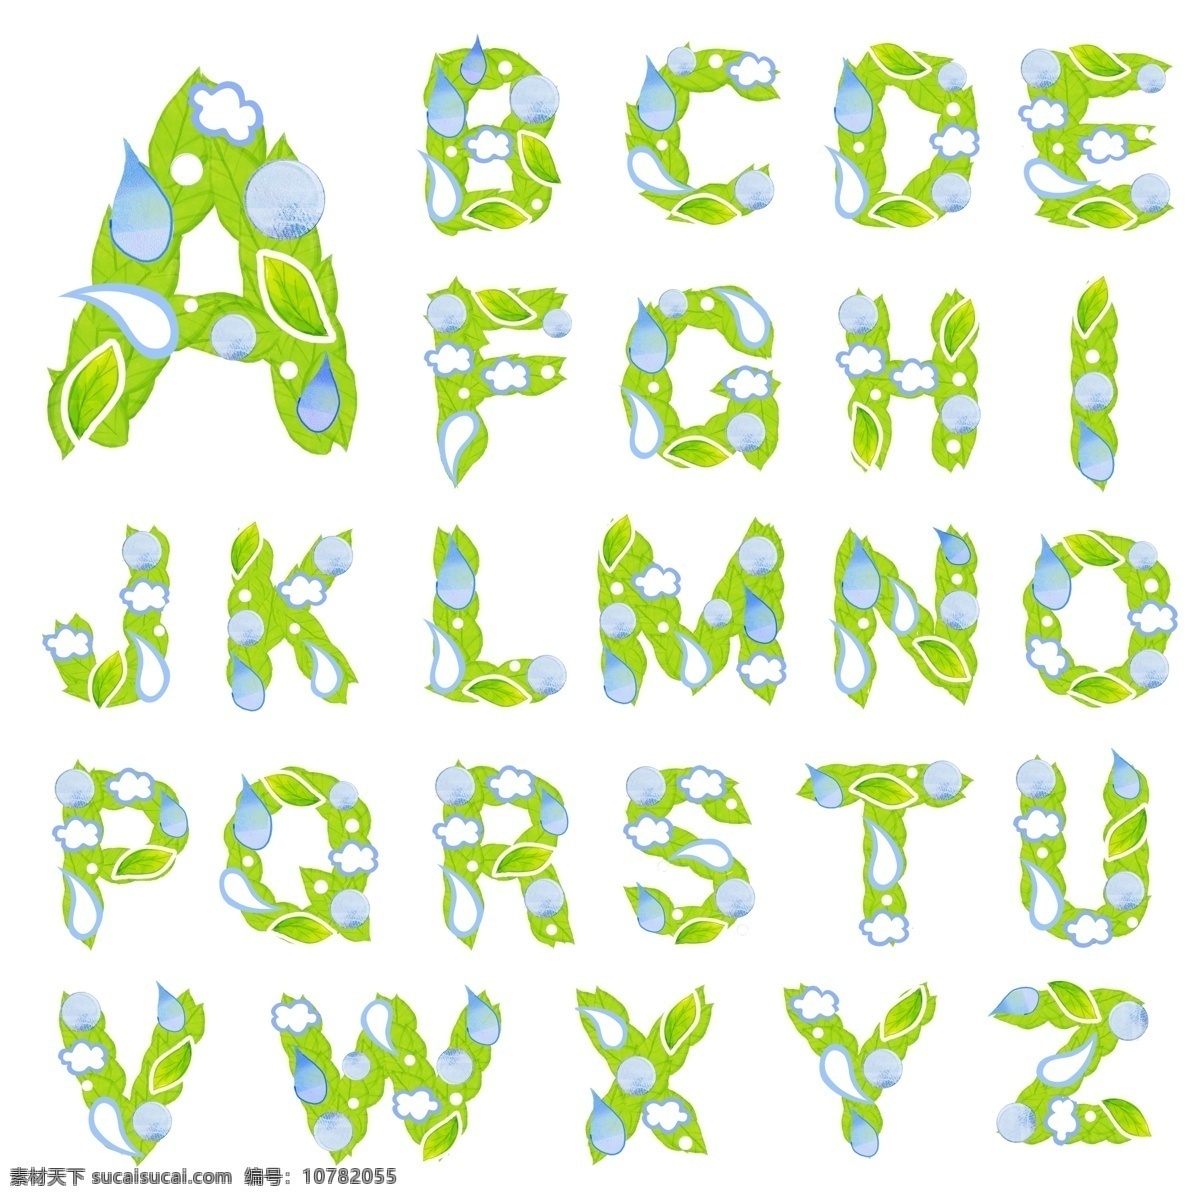 分层 白云 卡通 绿叶 漫画 水滴 绿色英文字母 叶子 水珠 字体 英文字母 源文件 矢量图 艺术字